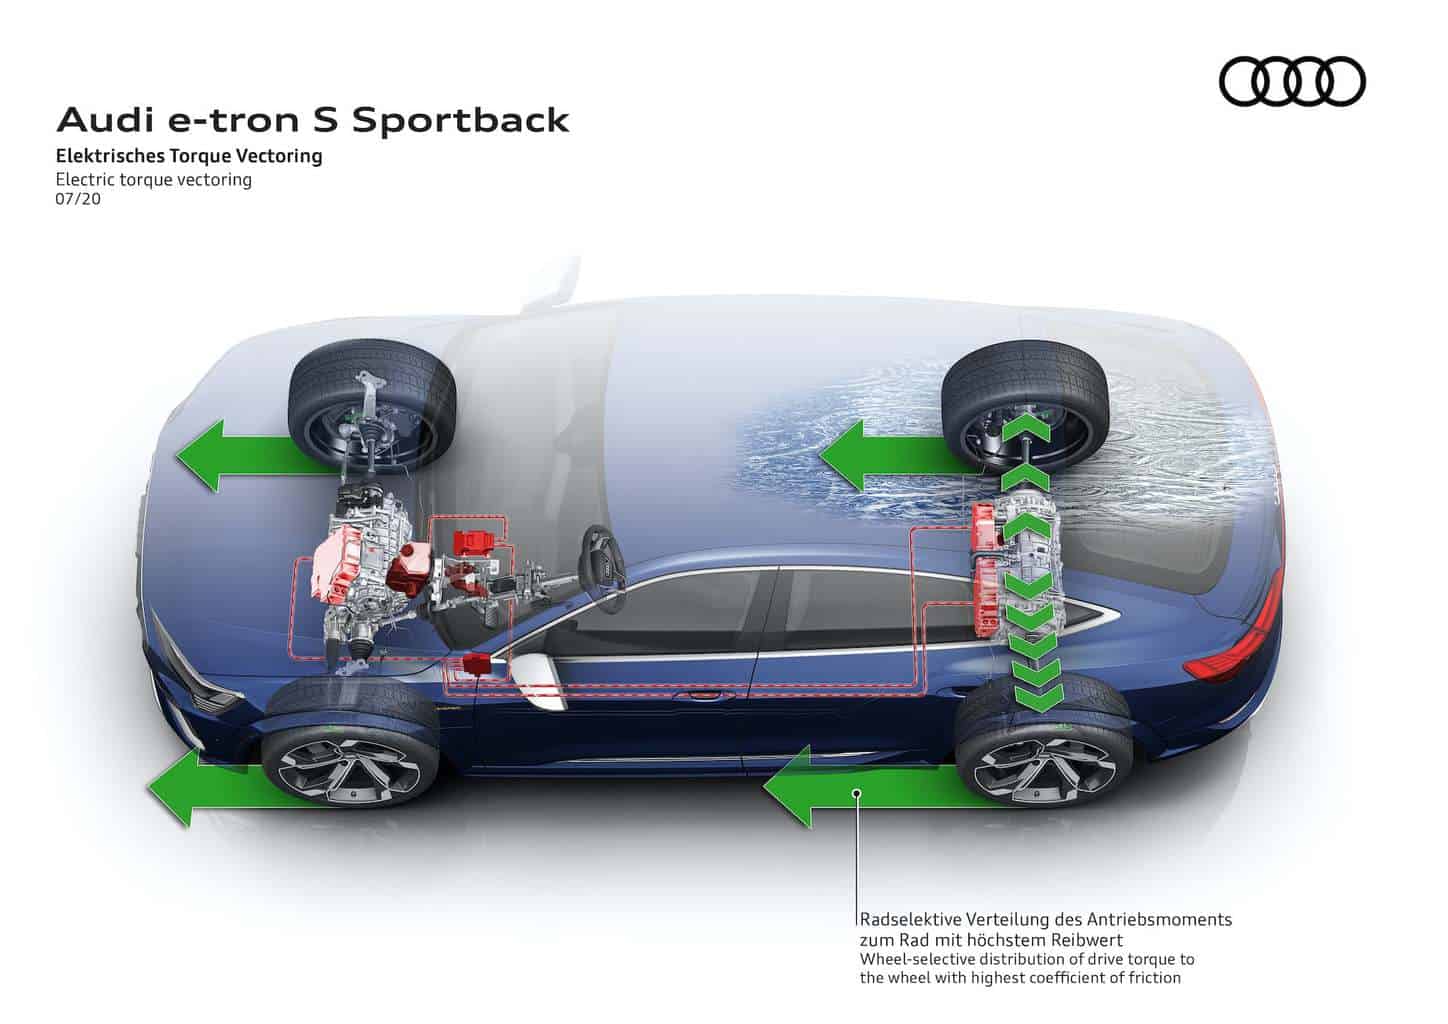 Audi e-tron S Sportback Torque Vectoring